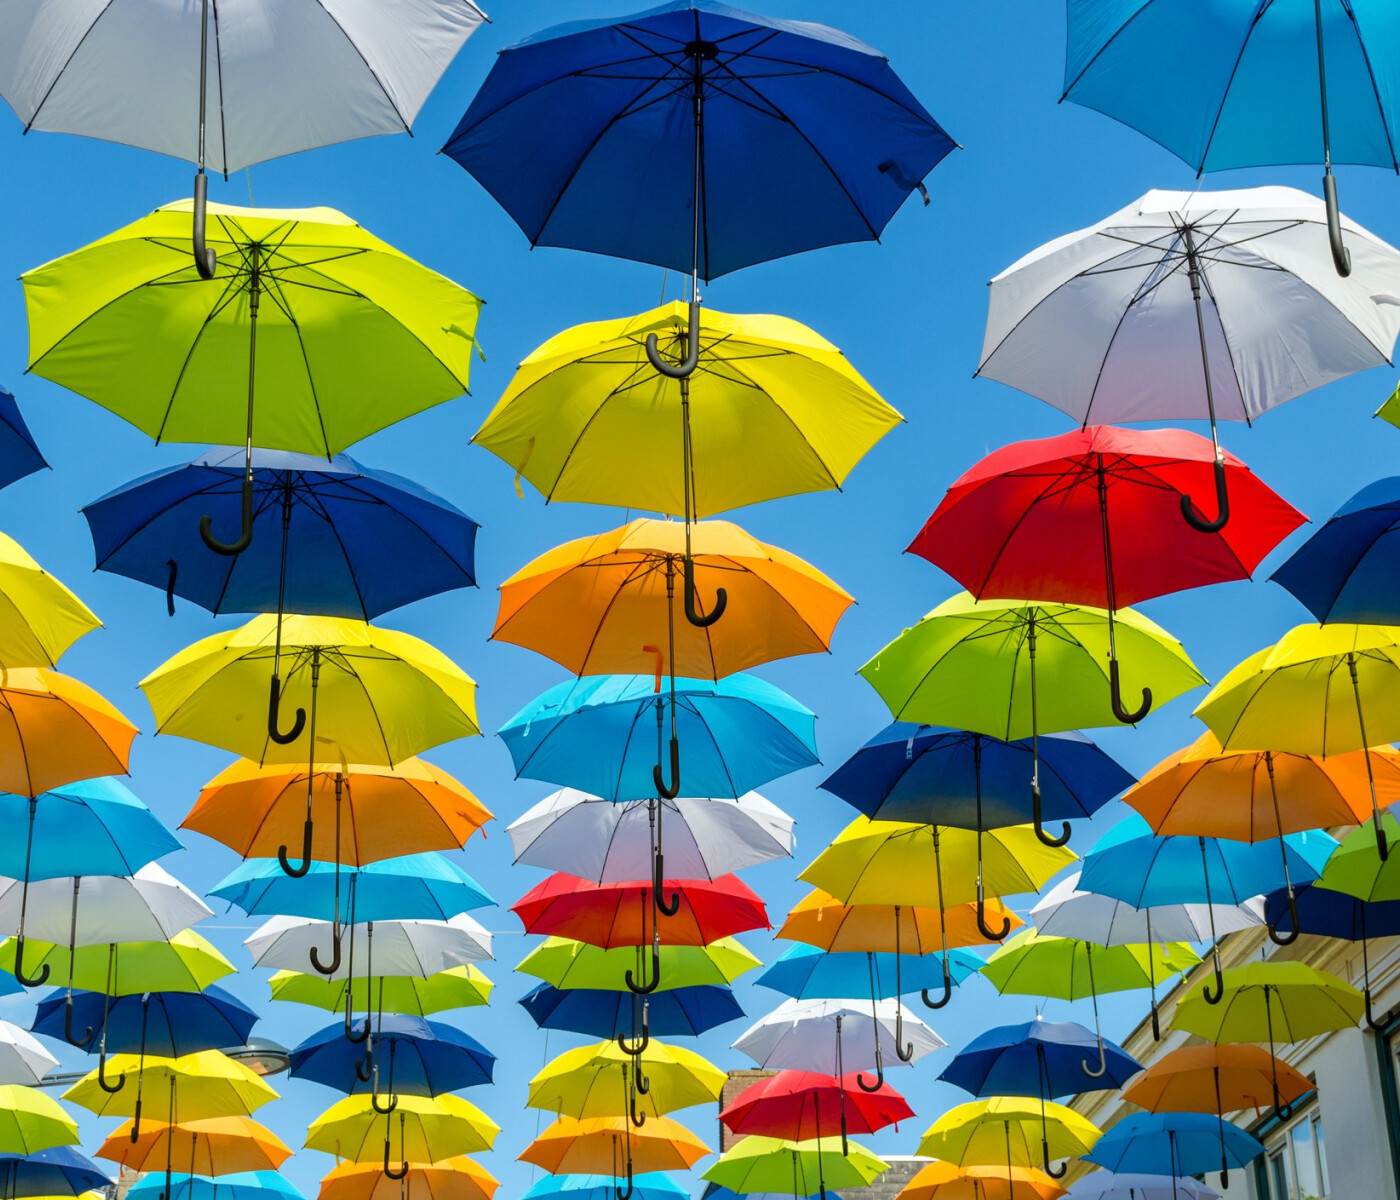 Duplicate umbrellas